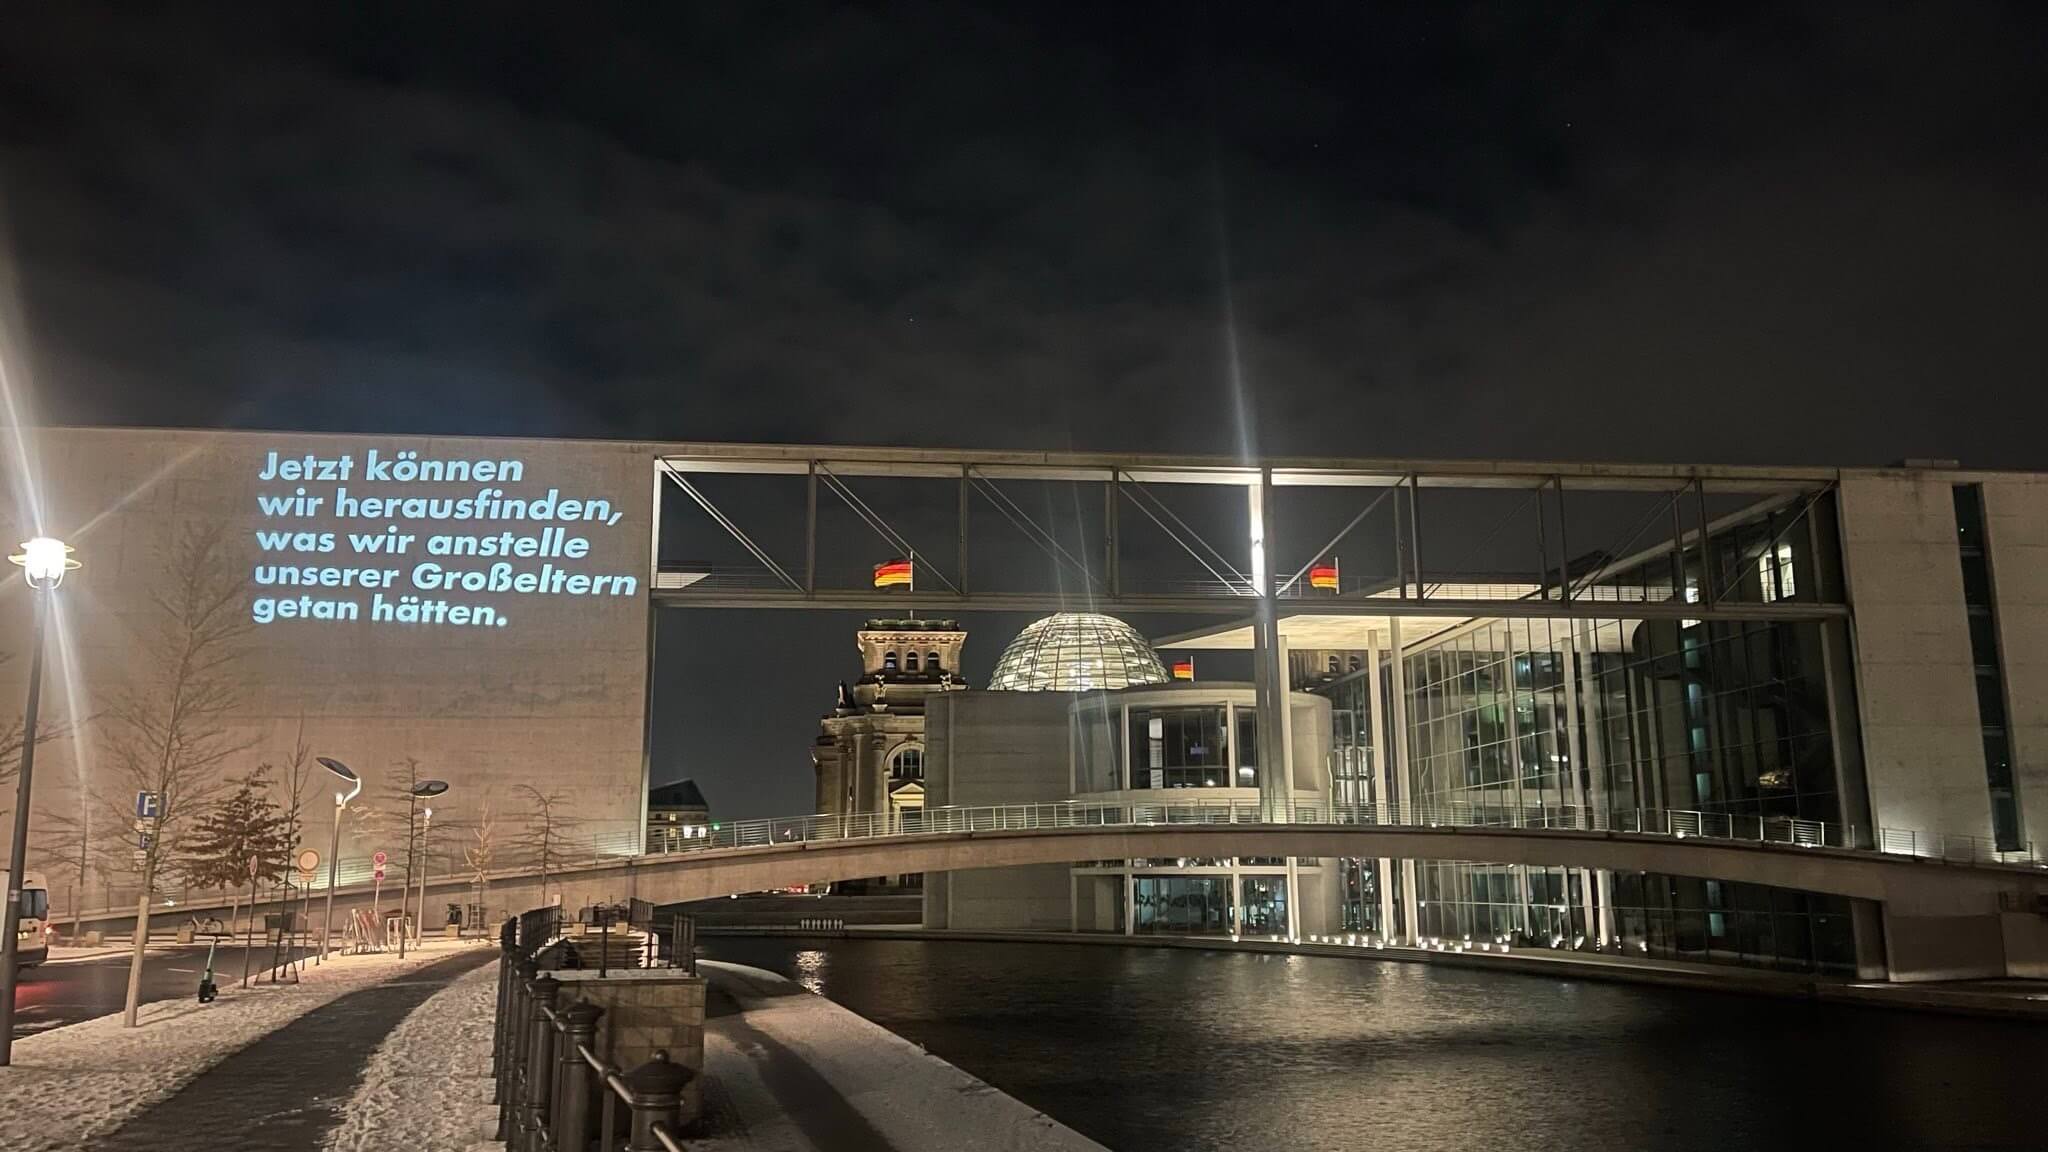 Nacht in Berlin: Im Hintergrund ist der Reichstag zu sehen, davor der Bundestag mit einer Projektion mit dem Satz: „Jetzt können wir herausfinden, was wir anstelle unserer Großeltern getan hätten“